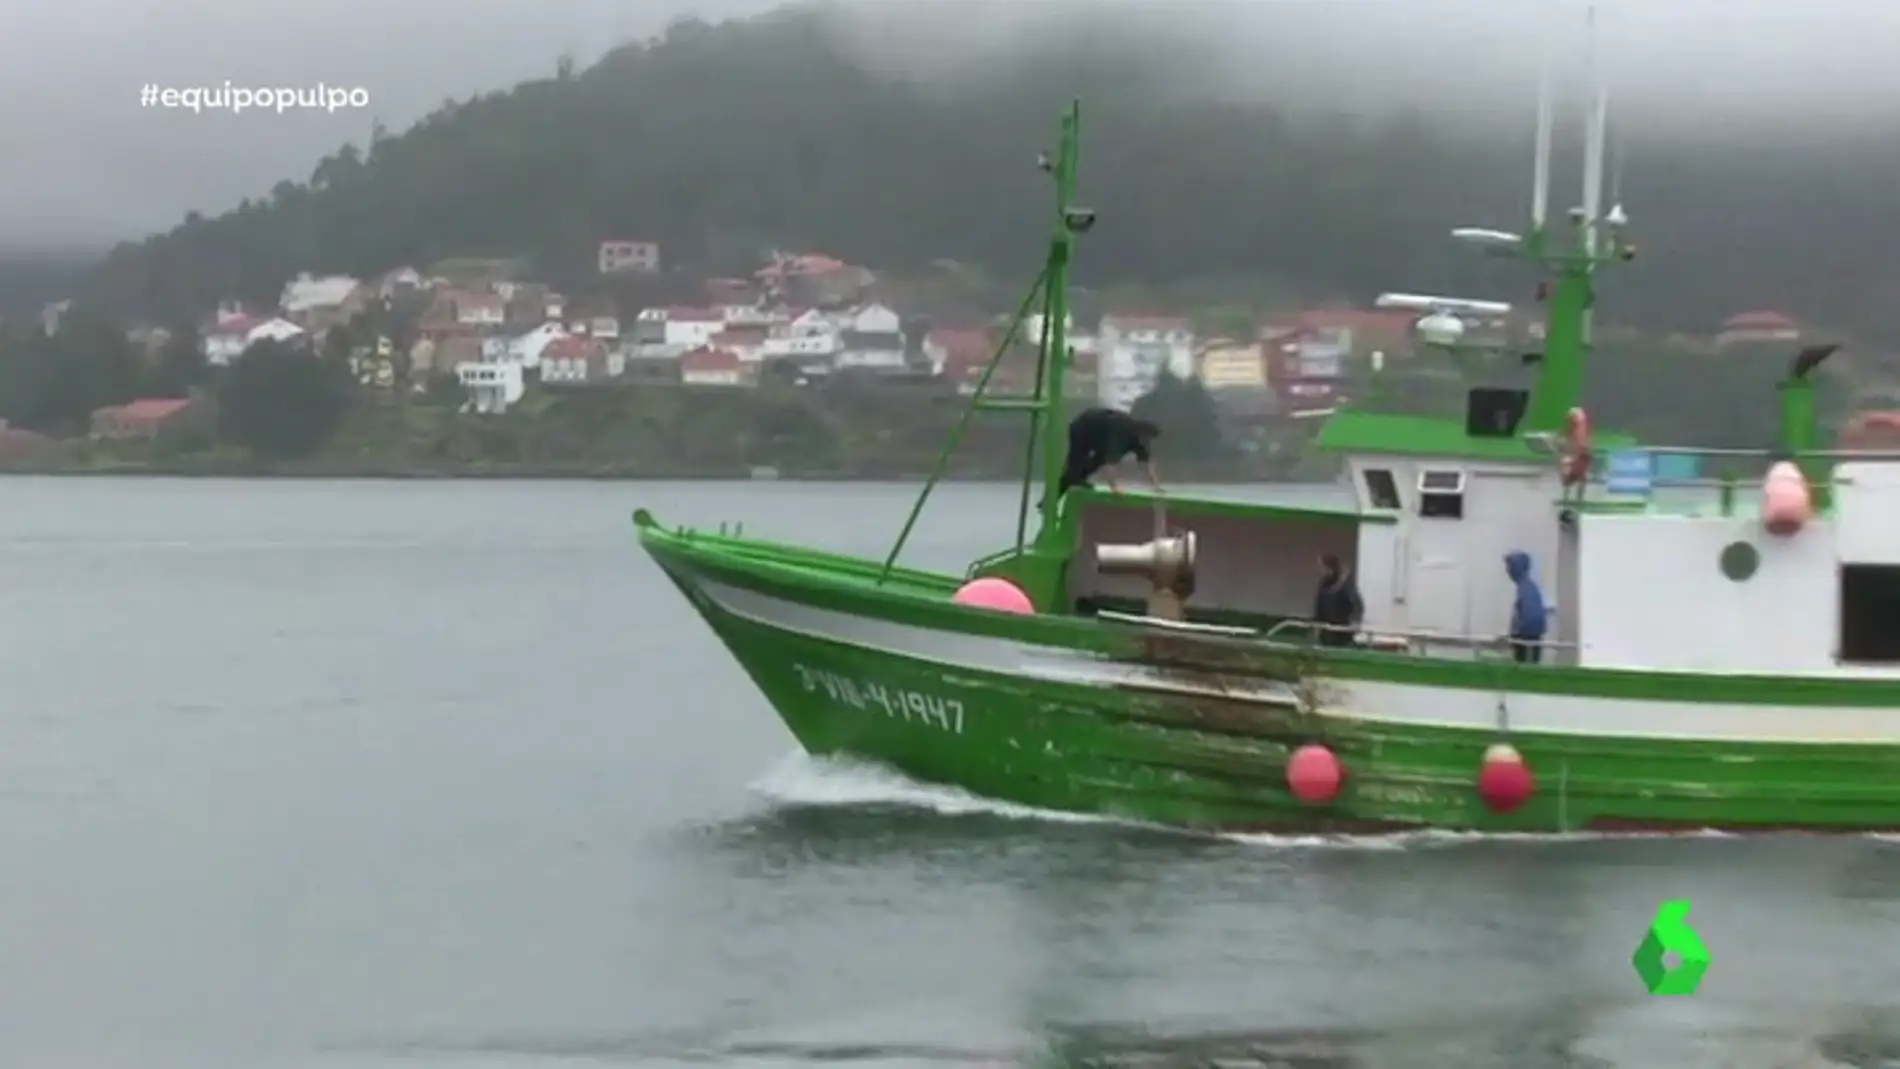 Tras los pasos de pescadores furtivos de pulpo: así funciona este lucrativo negocio negro en Galicia